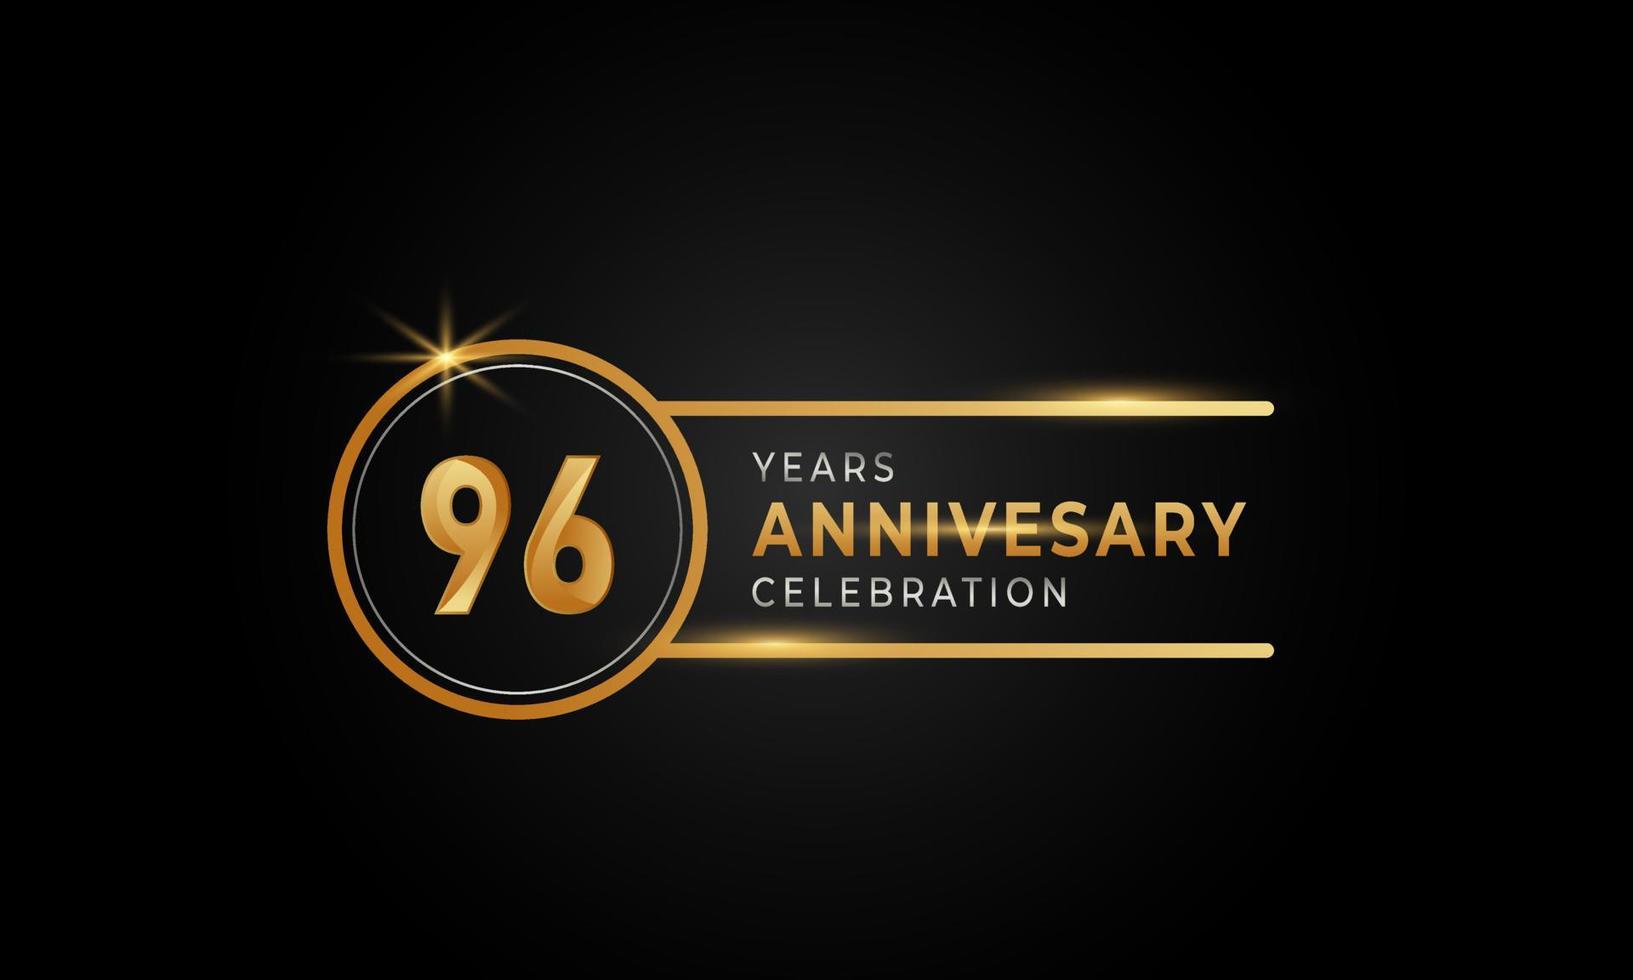 Célébration de l'anniversaire de 96 ans couleur or et argent avec anneau circulaire pour événement de célébration, mariage, carte de voeux et invitation isolée sur fond noir vecteur